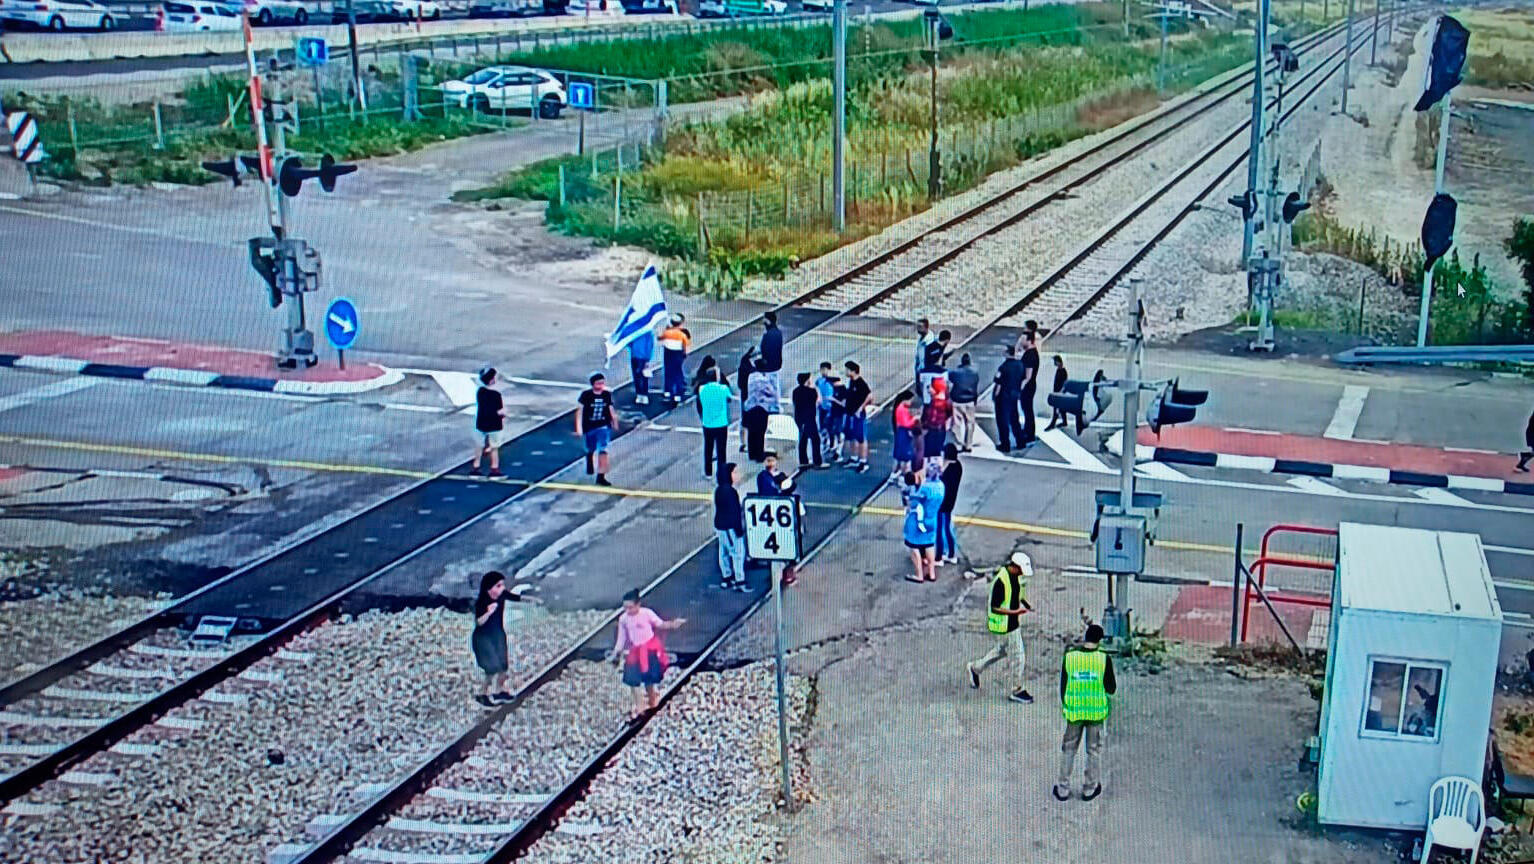 תושבי ניצן חוסמים מפגש כביש מסילה רכבת ישראל 